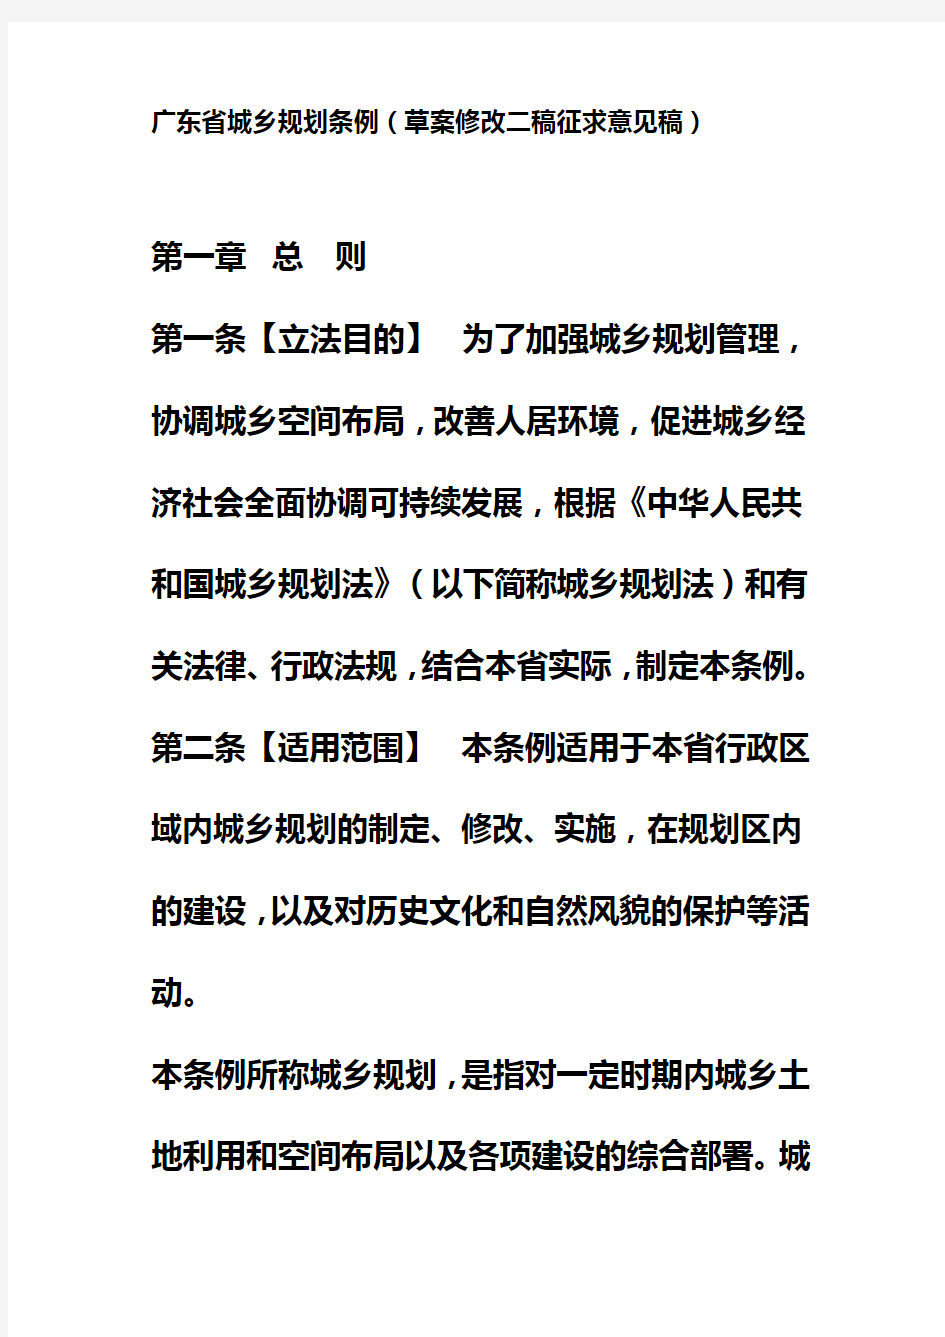 广东省城乡规划条例(征求意见稿)